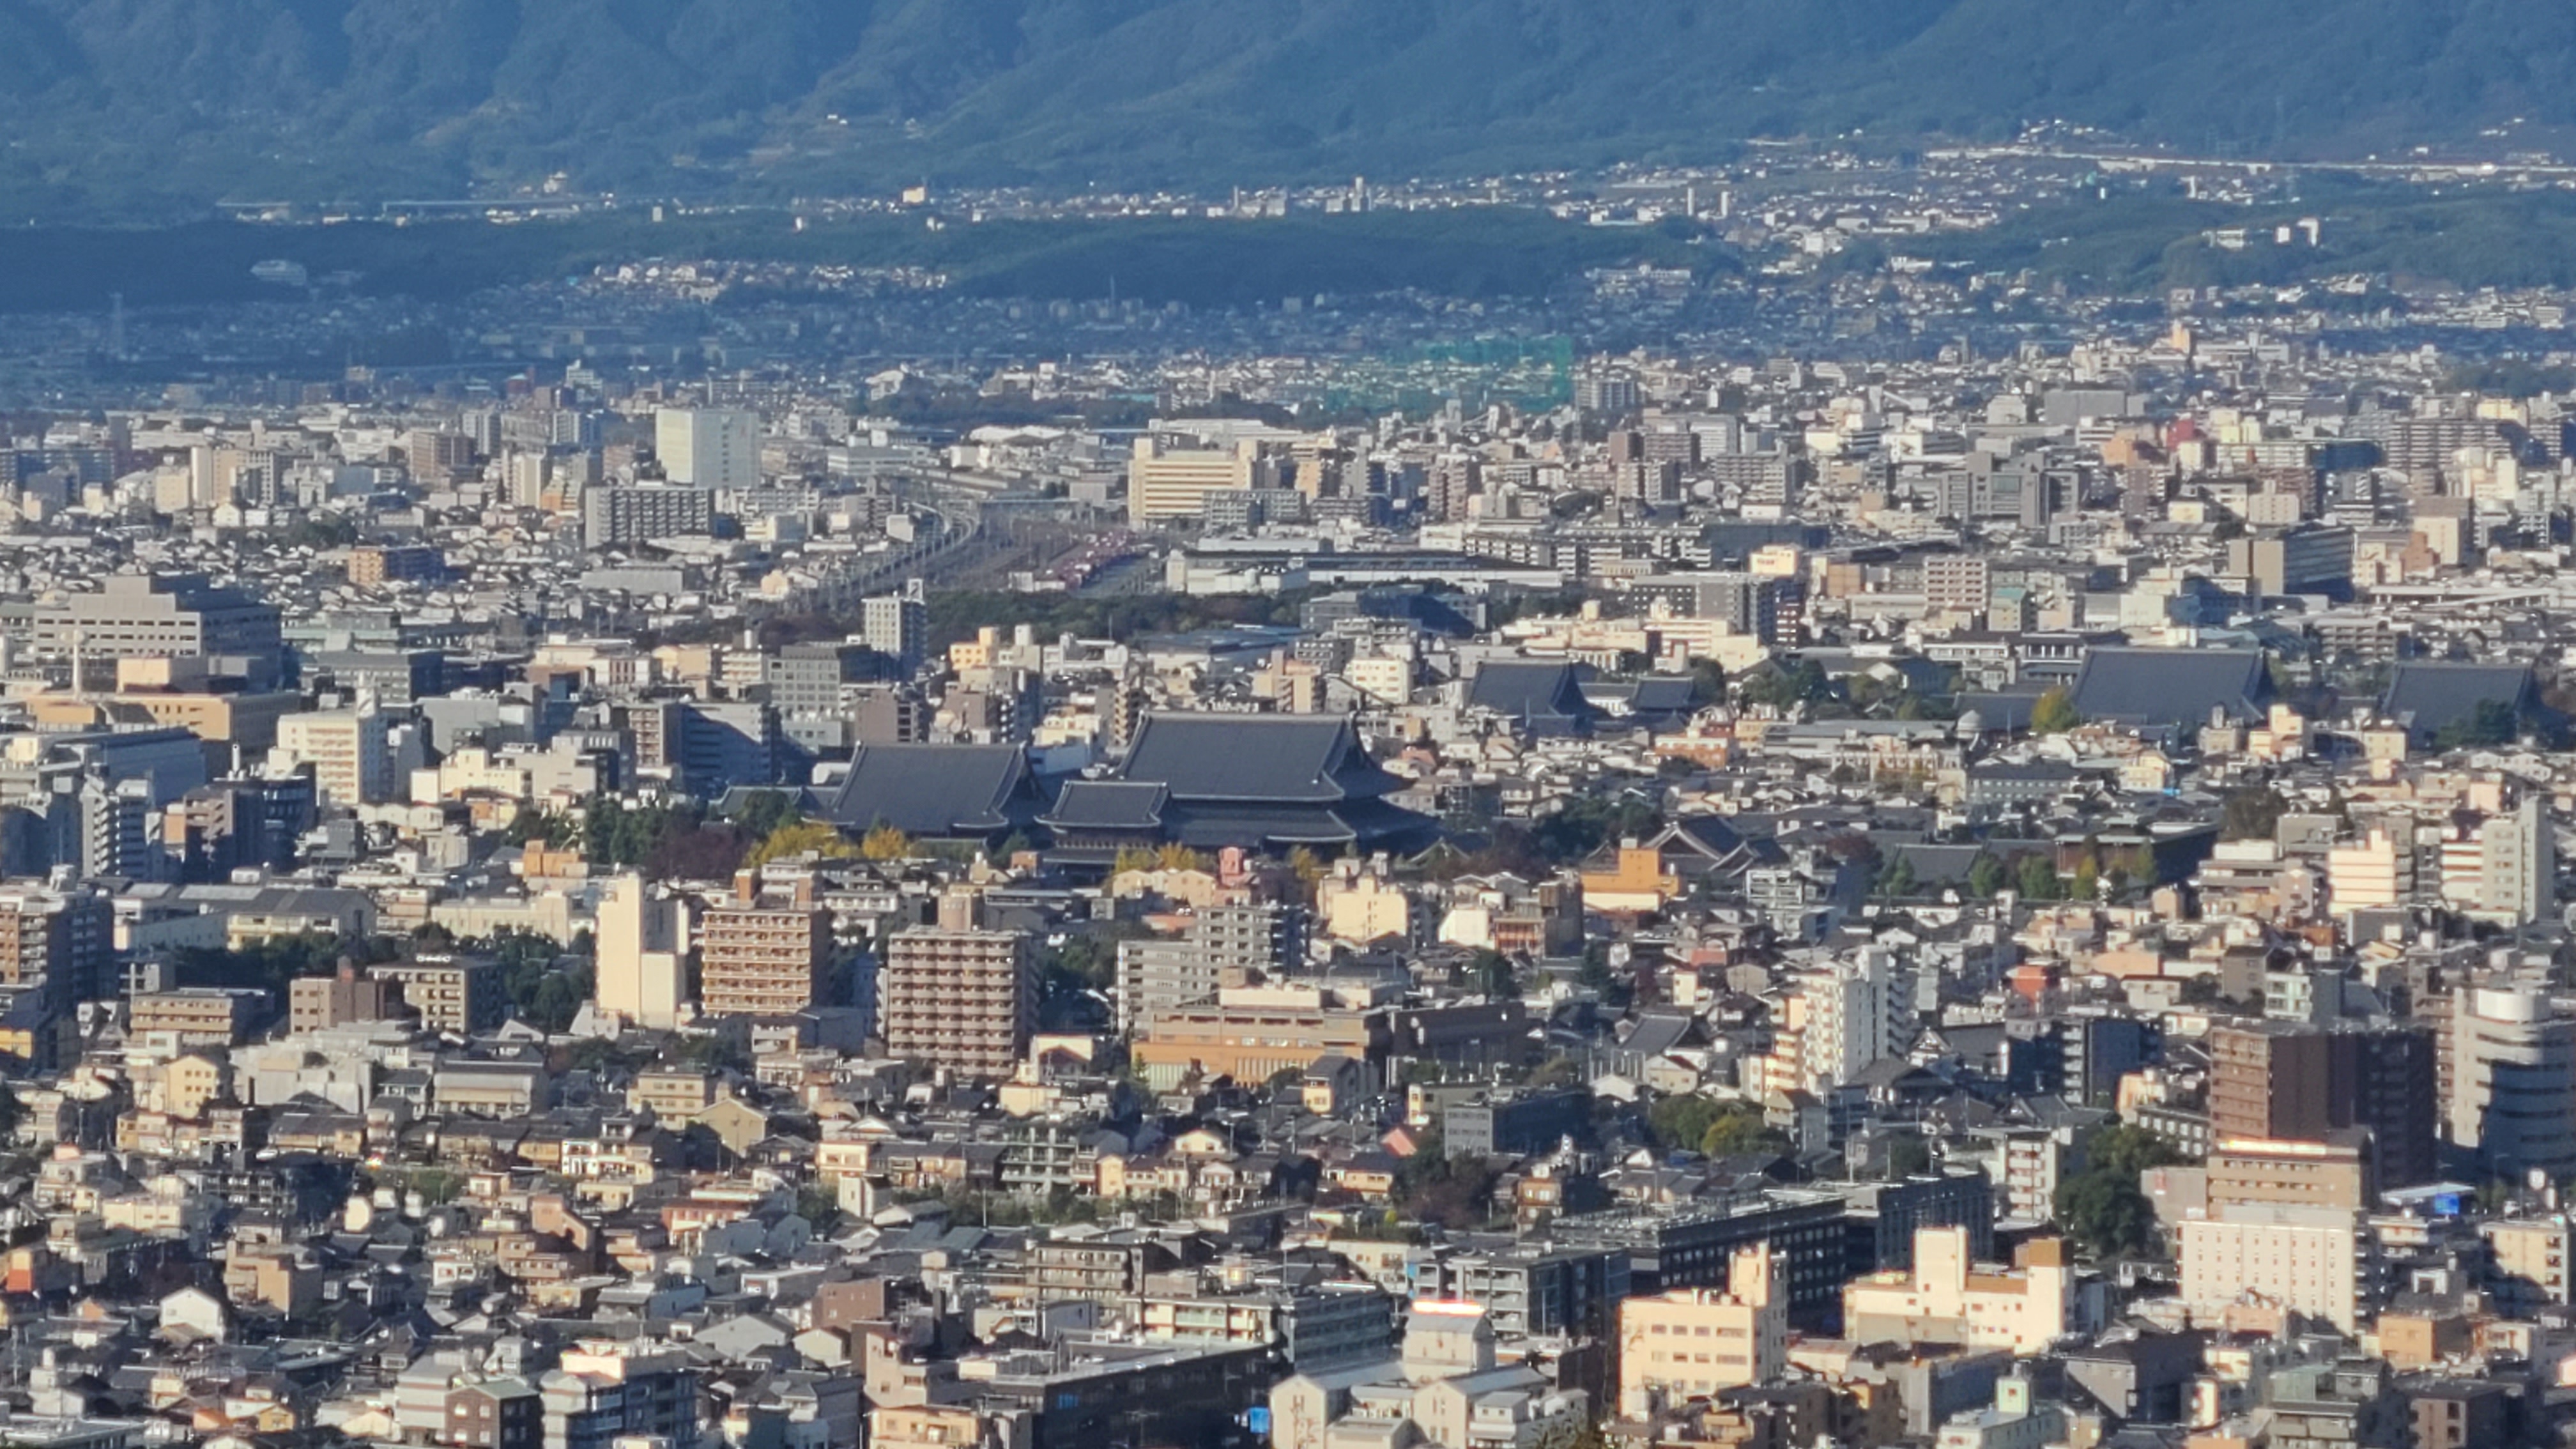 메이지 유신(1868년) 이전 천 년 이상 일본의 수도였던 교토시 전경.           KBS